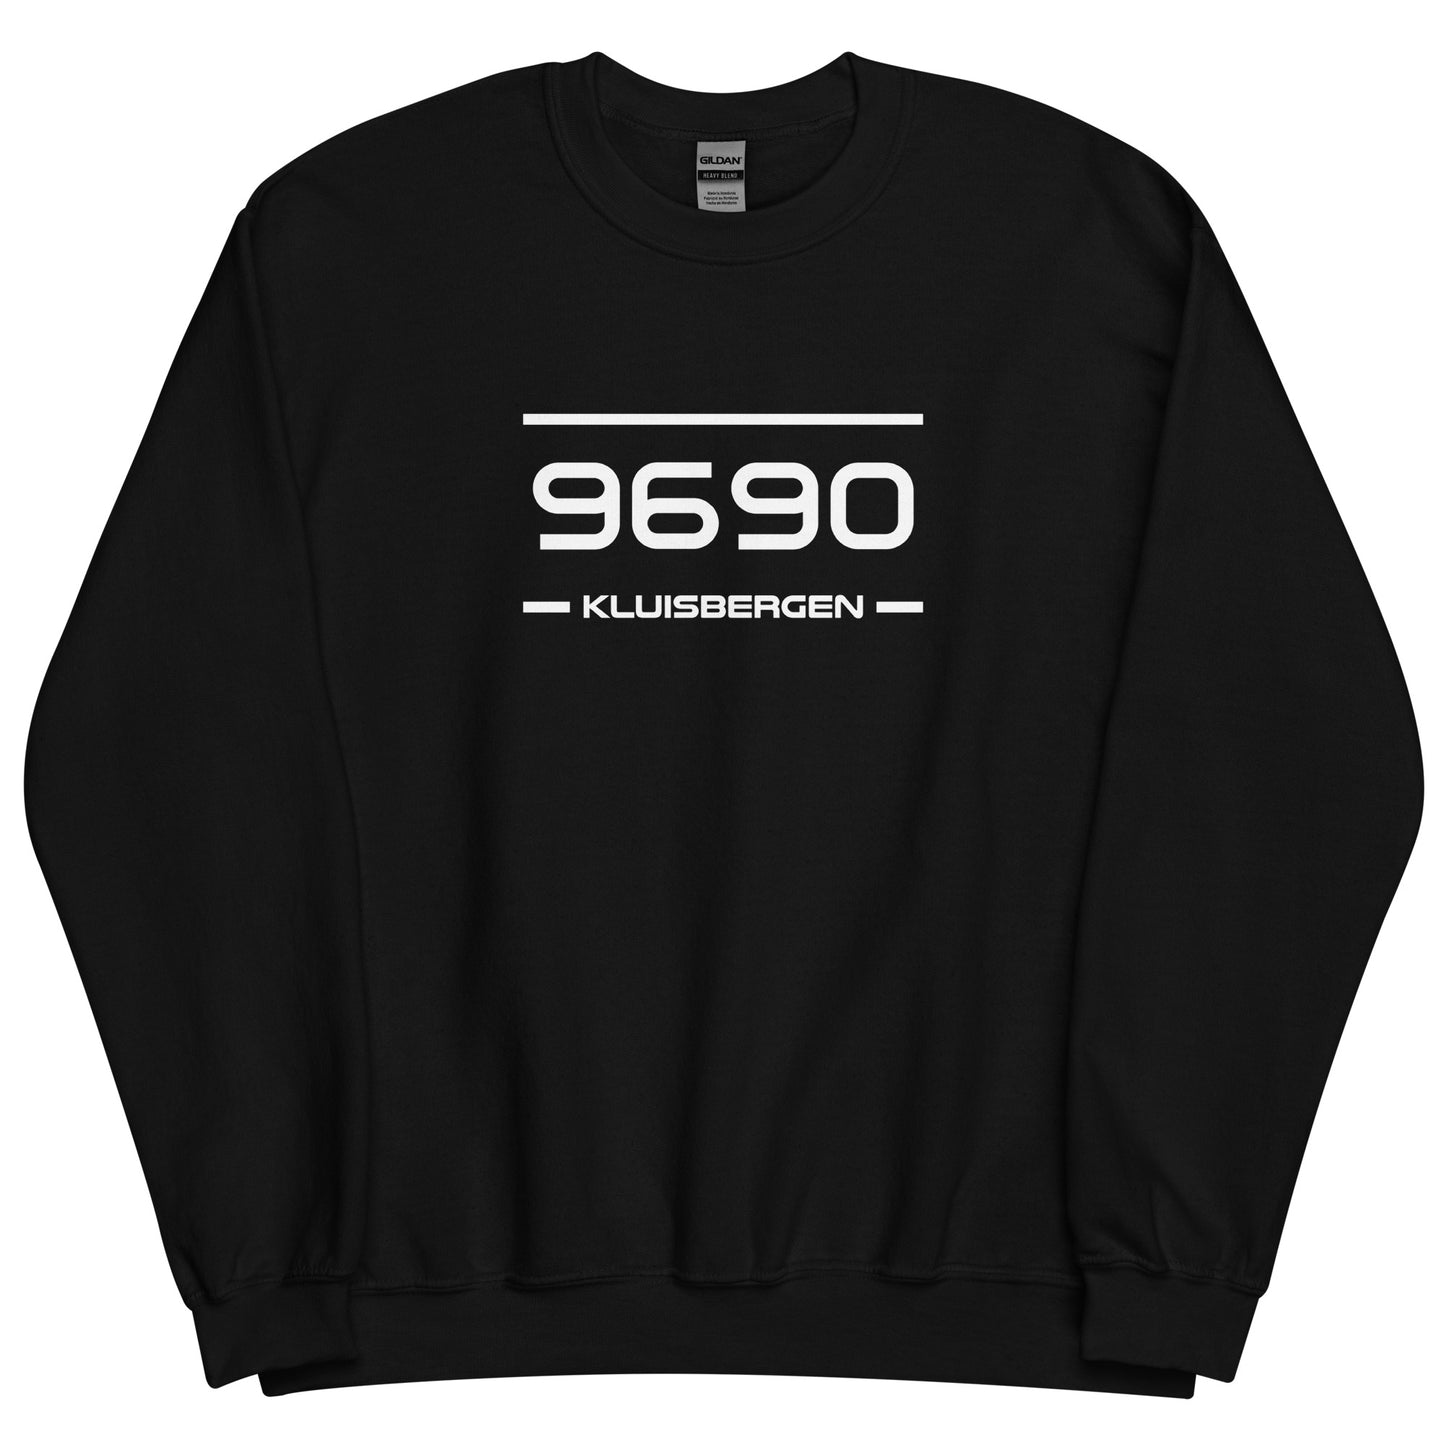 Sweater - 9690 - Kluisbergen (M/V)